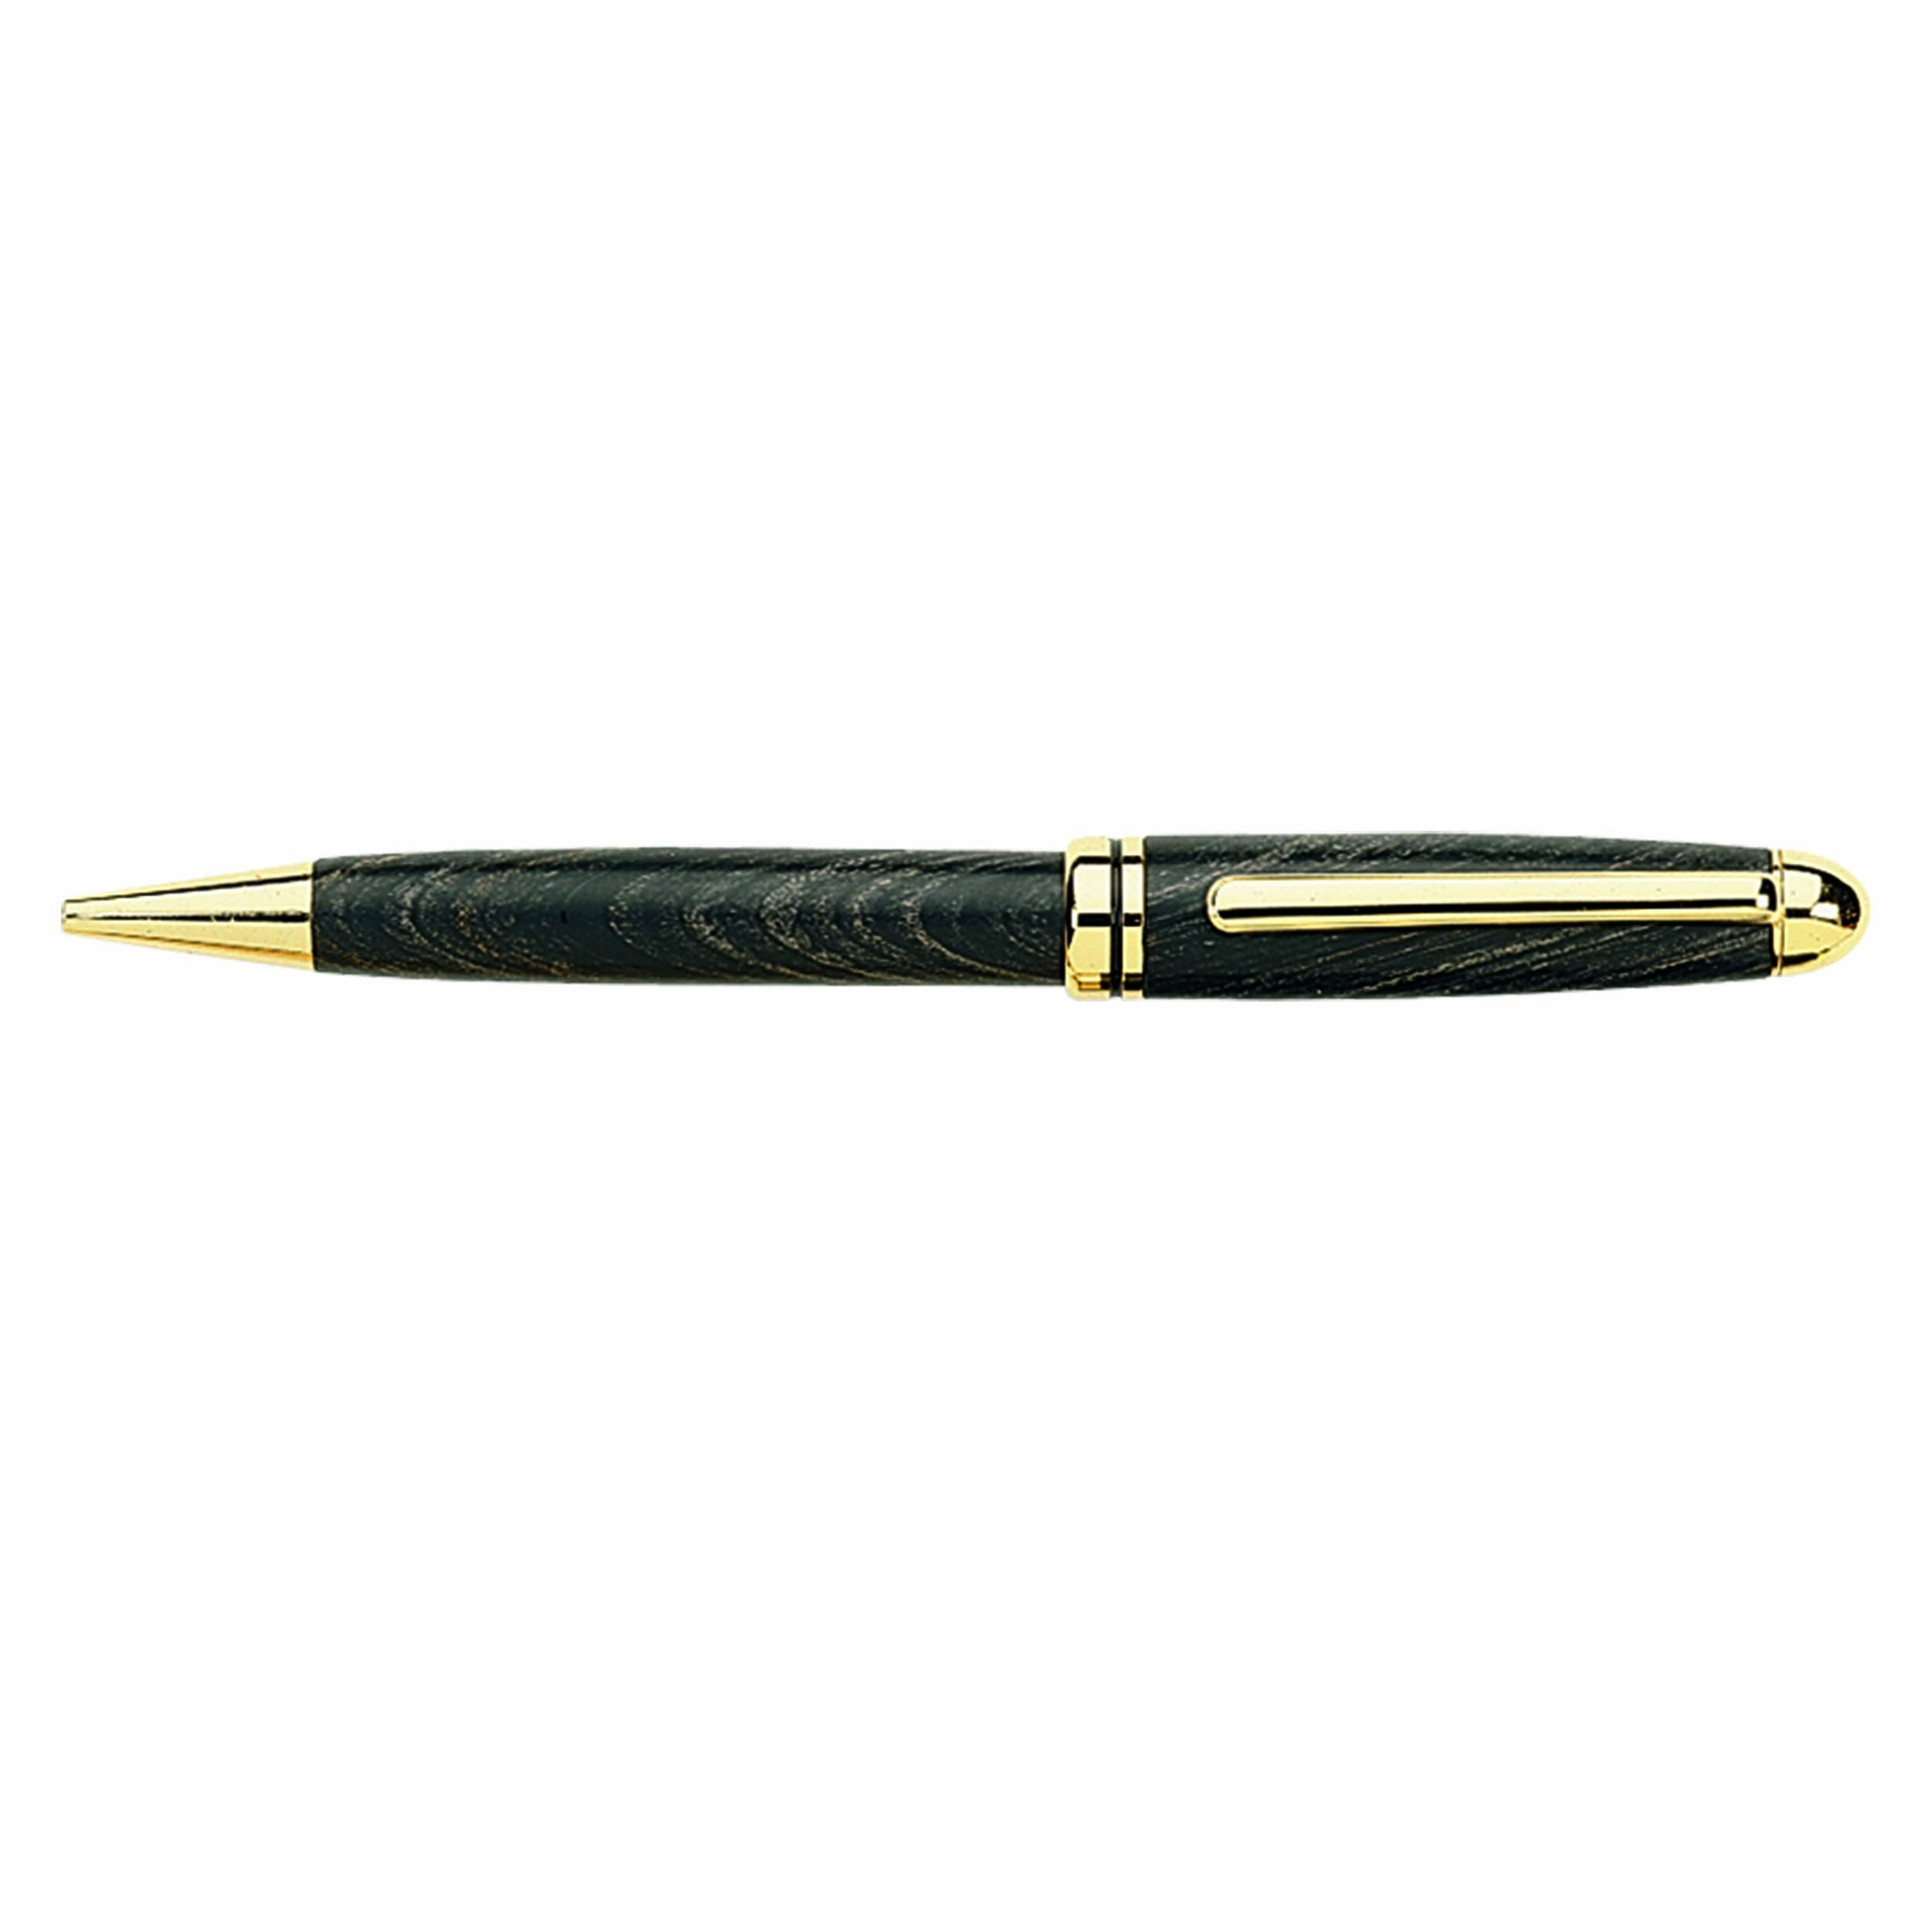 European Style Ballpoint Pen Kit - Gold